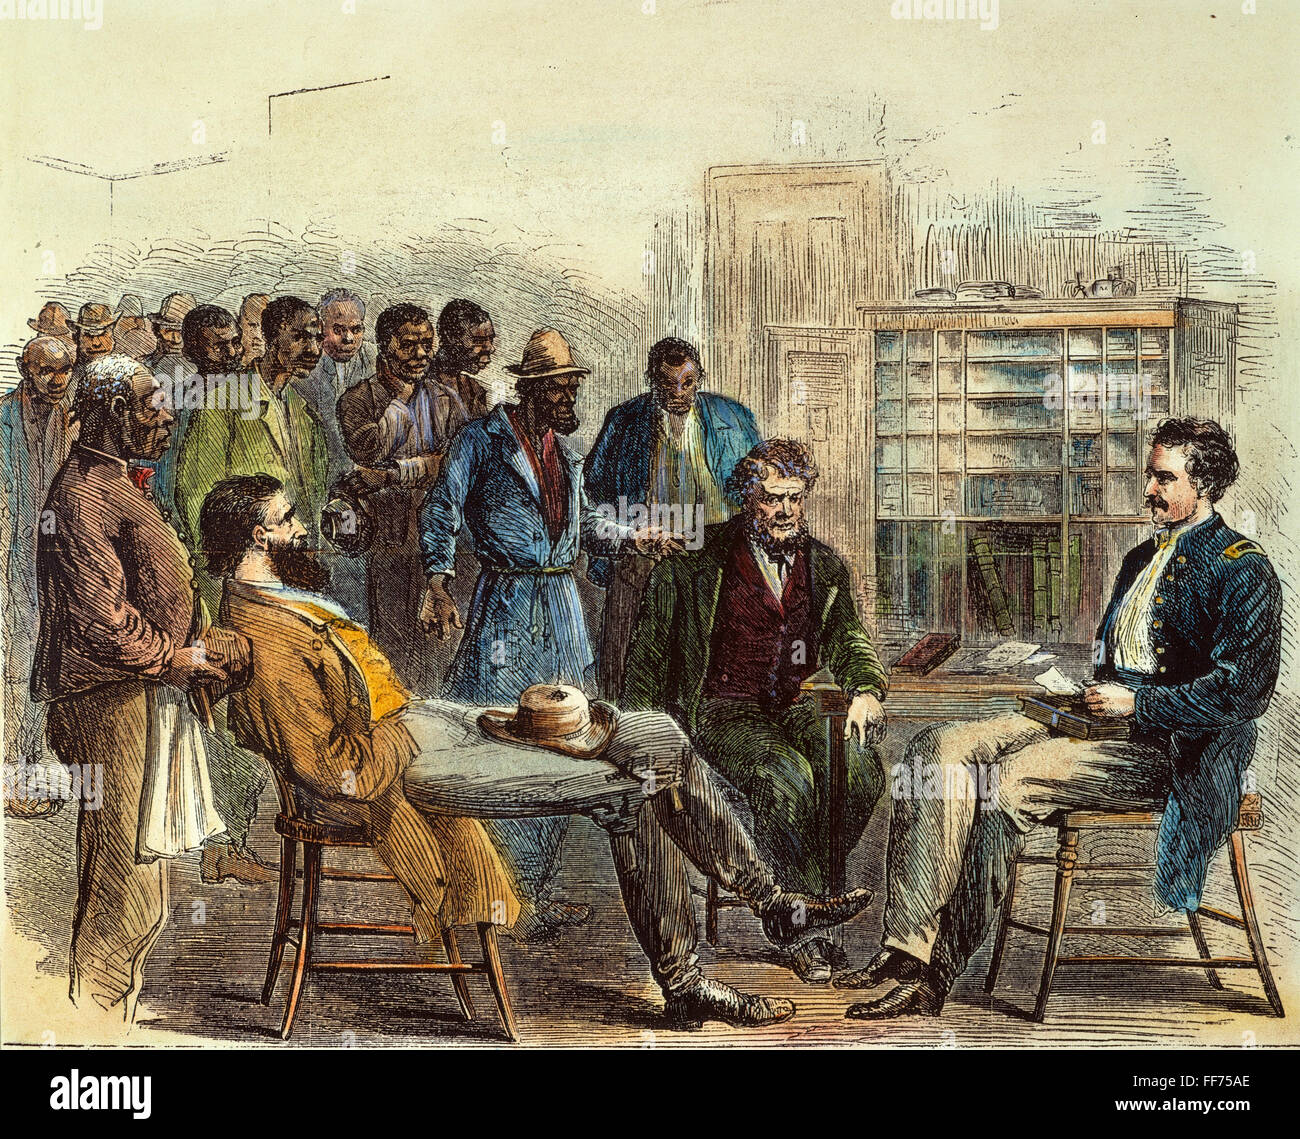 TENN : FIN AUX BUREAU. Les personnes libérées de /NASPECT Office's Bureau à Memphis, Tennessee : gravure couleur, 1866. Banque D'Images